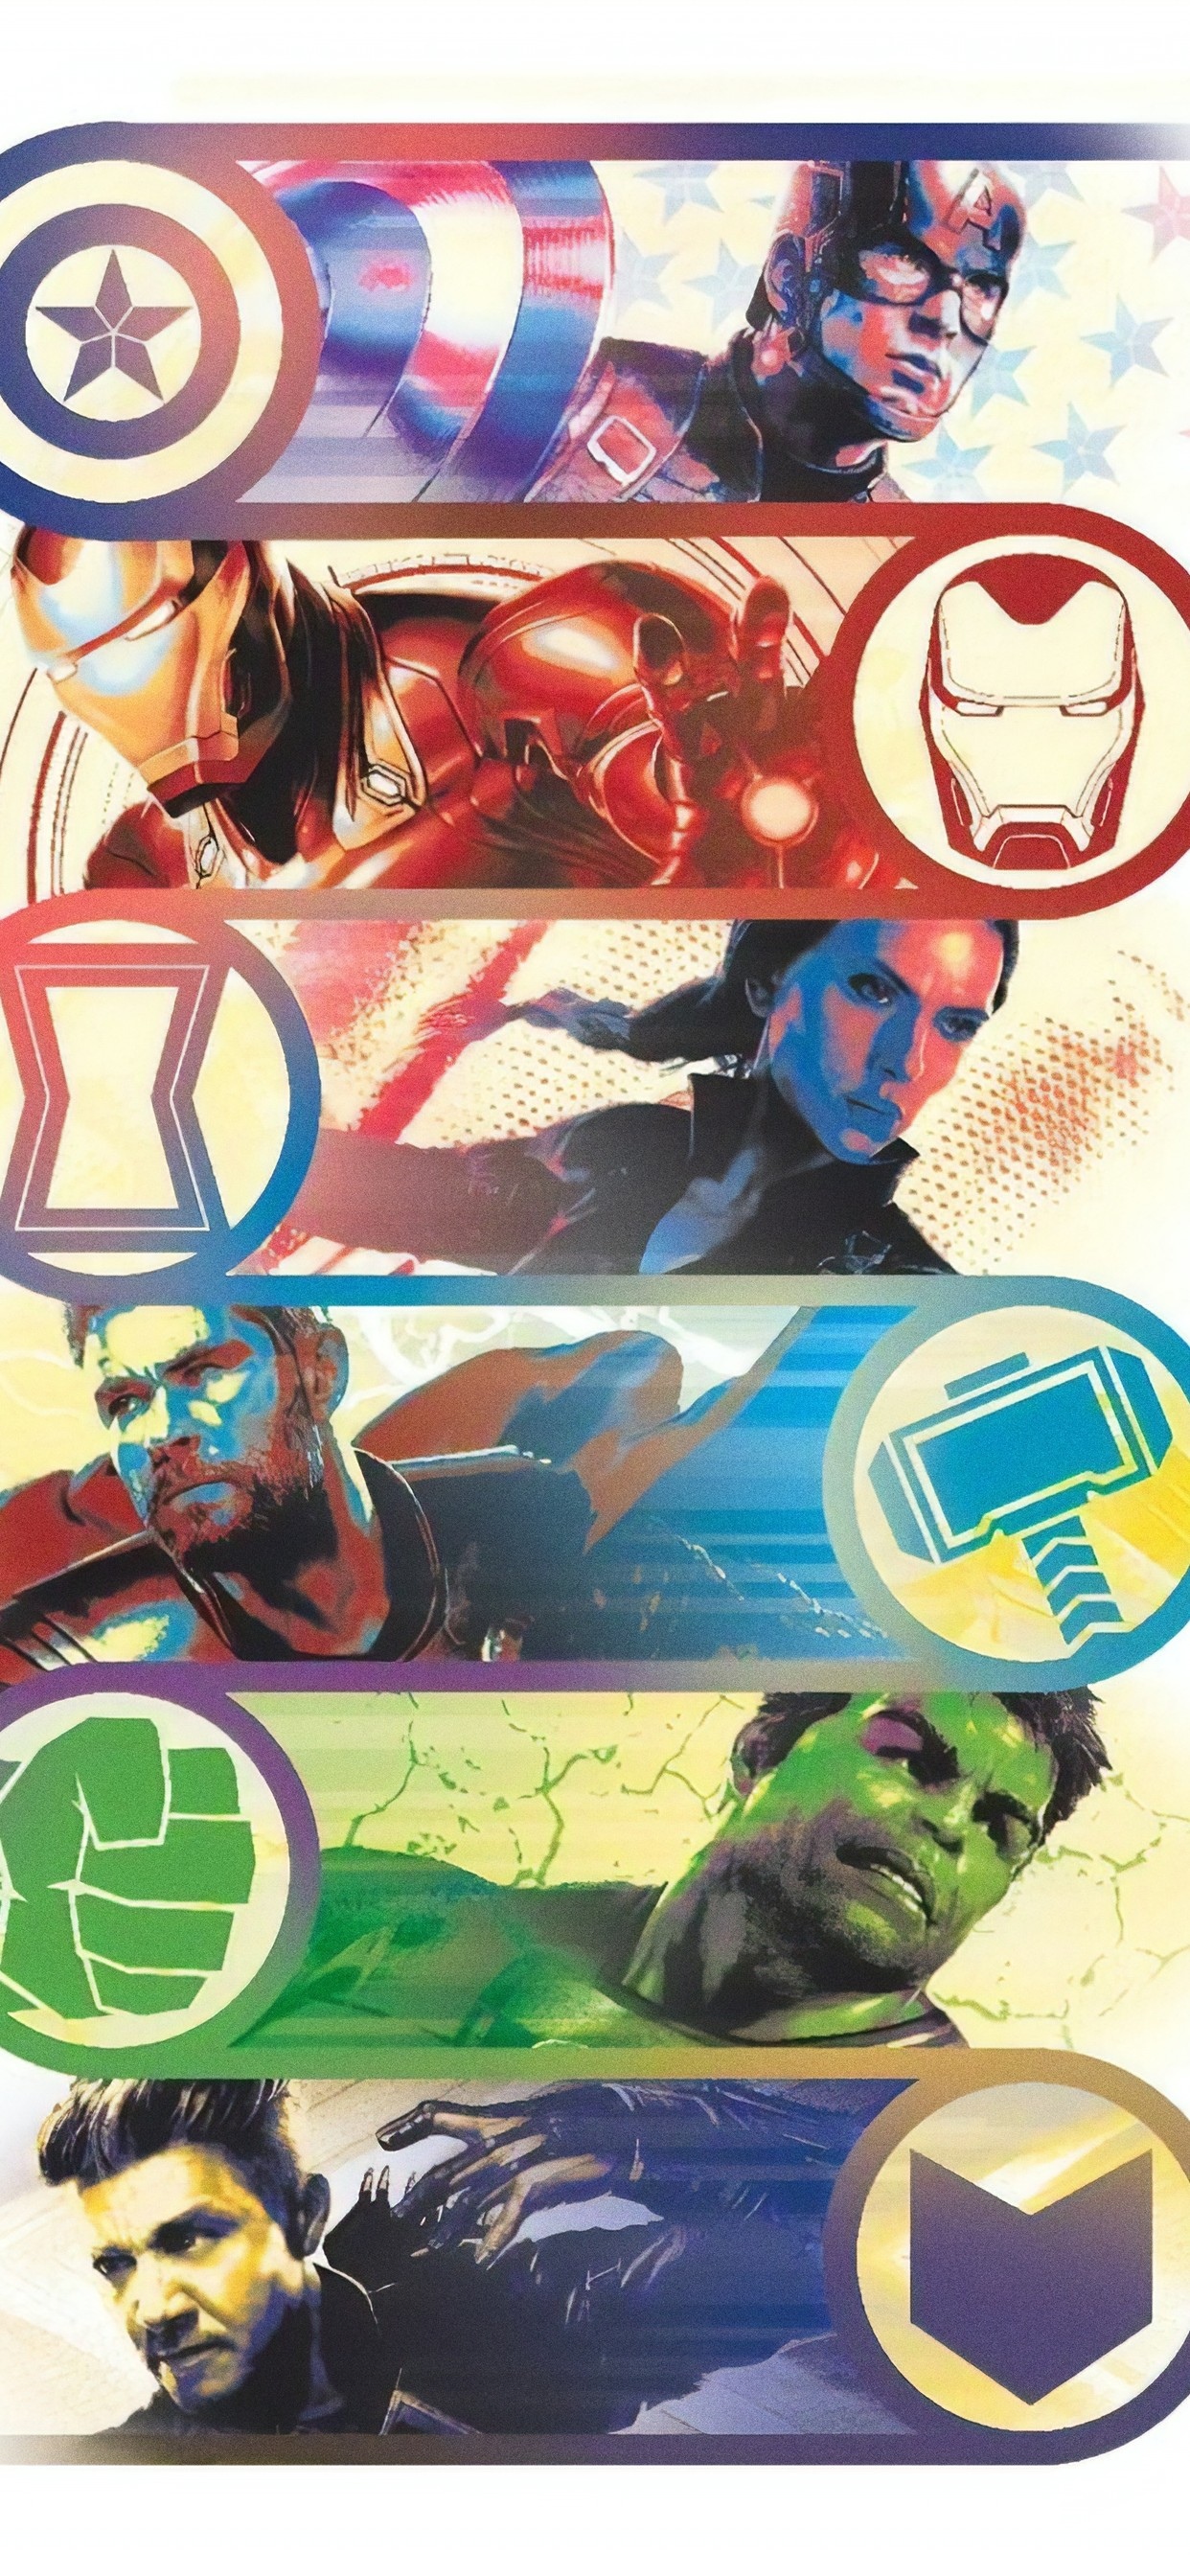 《复仇者联盟4》六大英雄创意海报(2019)